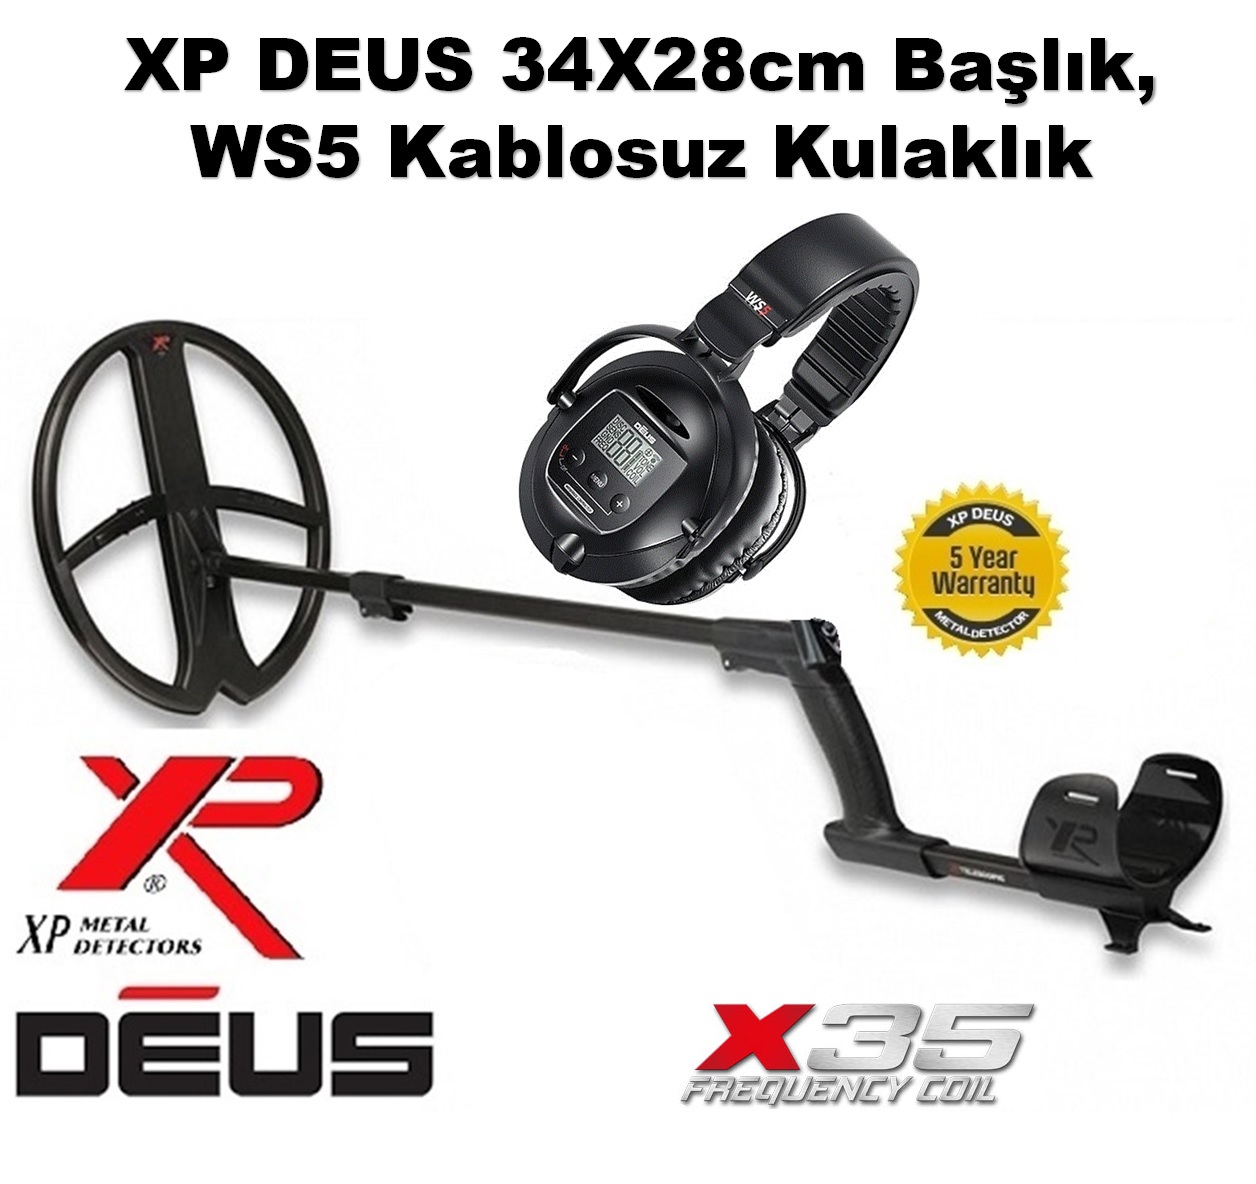 XP DEUS - 34x28cm X35 Başlık, WS5 Kulaklık